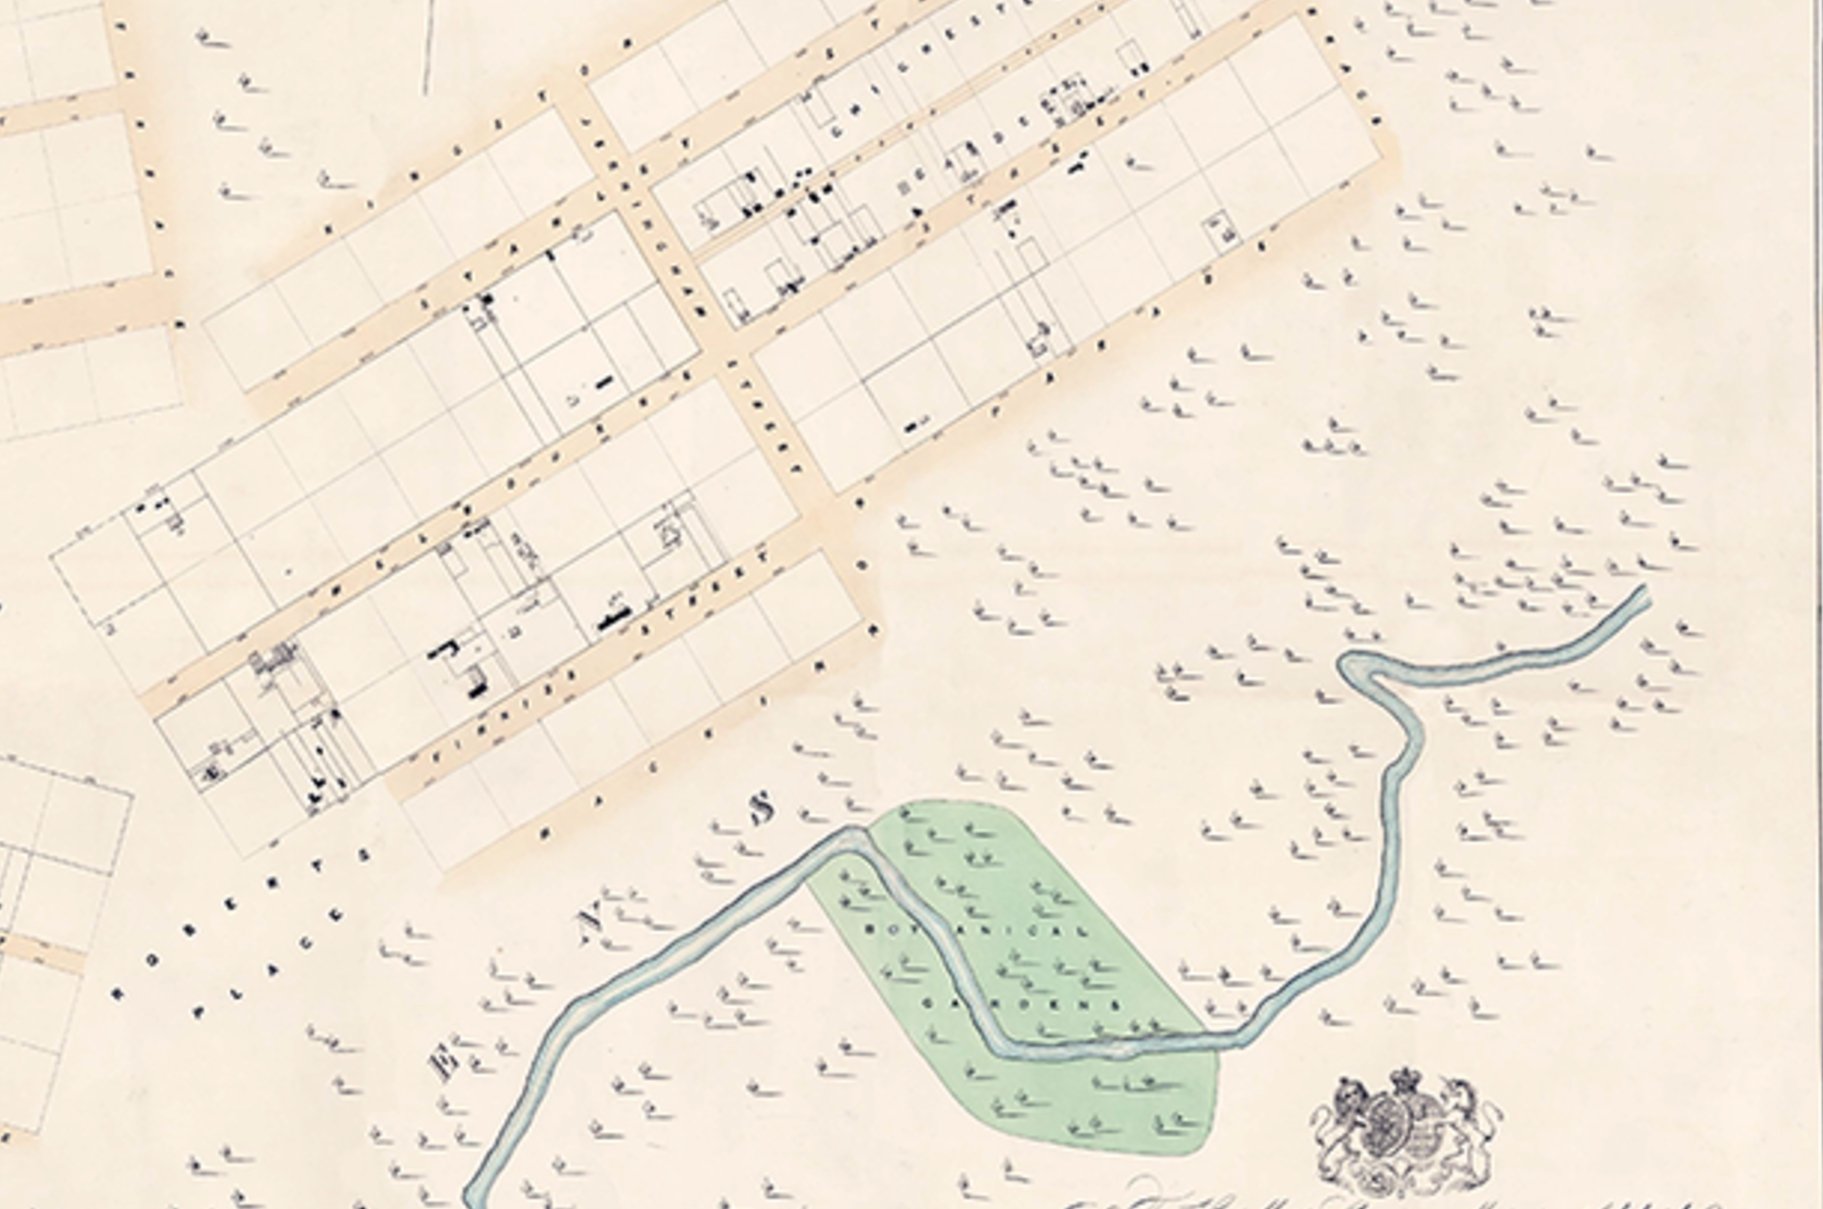 1841 Plan by G.S. Kingston, showing Botanic Garden site